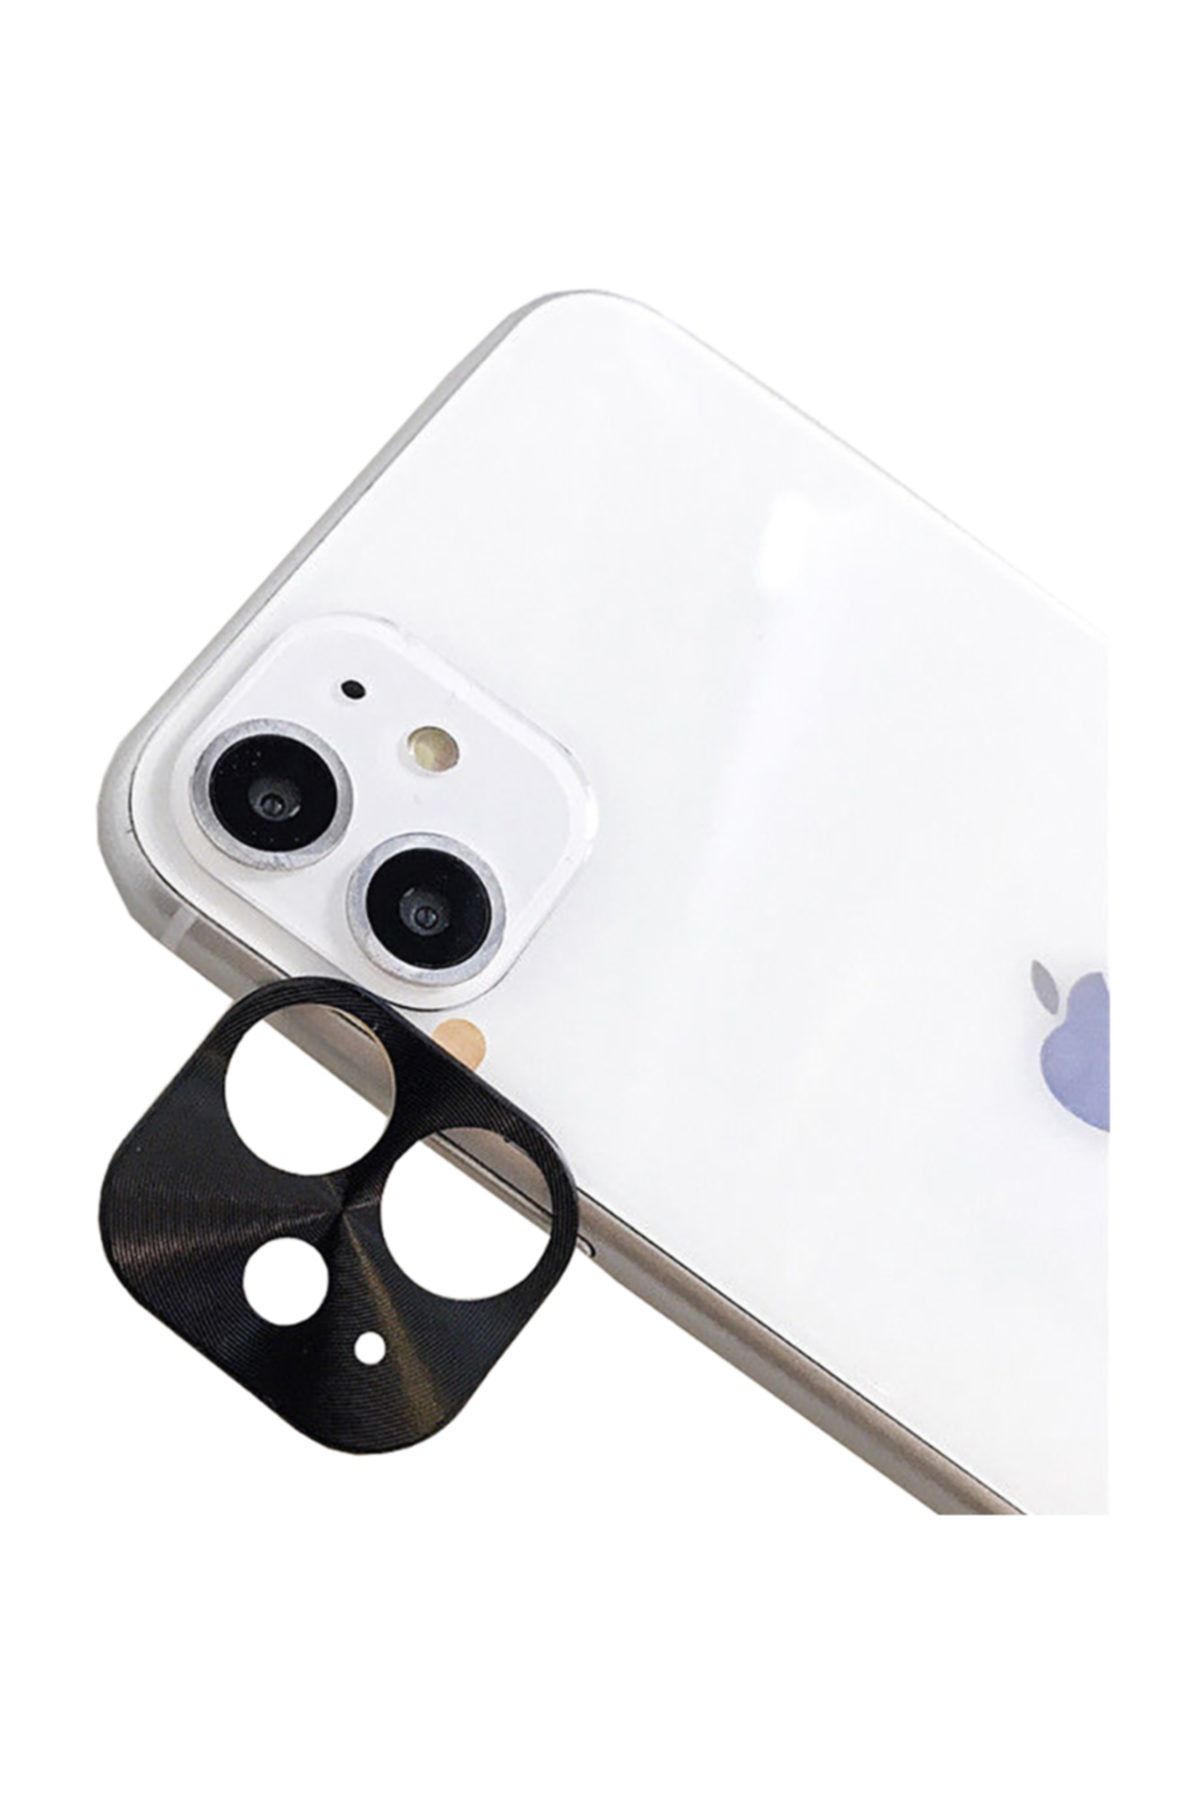 Microcase Iphone 11 Kamera Lens Koruma Halkası - Kapalı Tasarım - Siyah